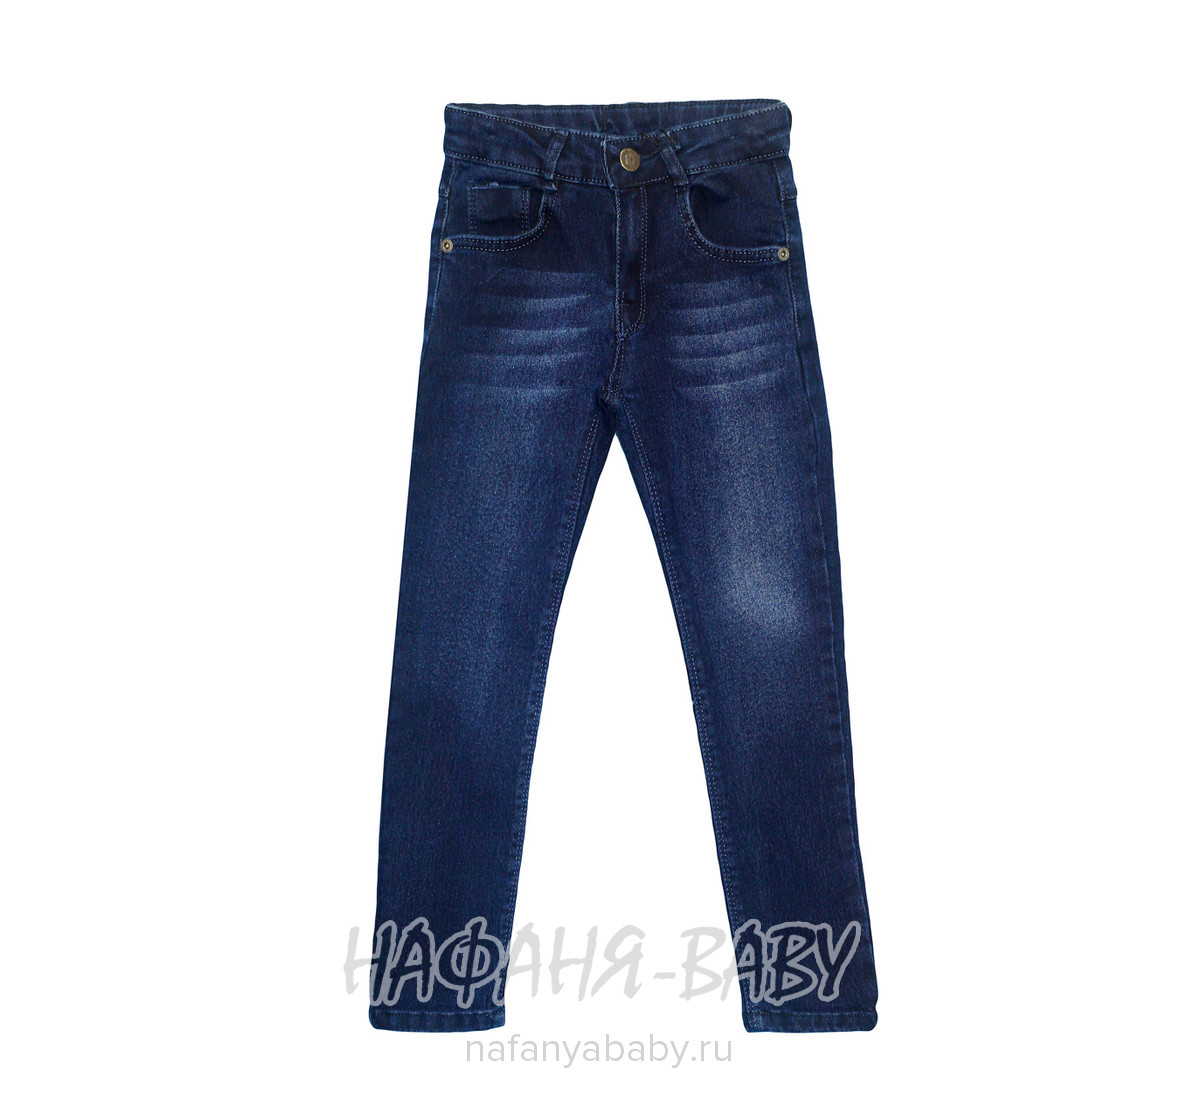 Подростковые джинсы Sercino арт: 17104, 10-15 лет, оптом Турция